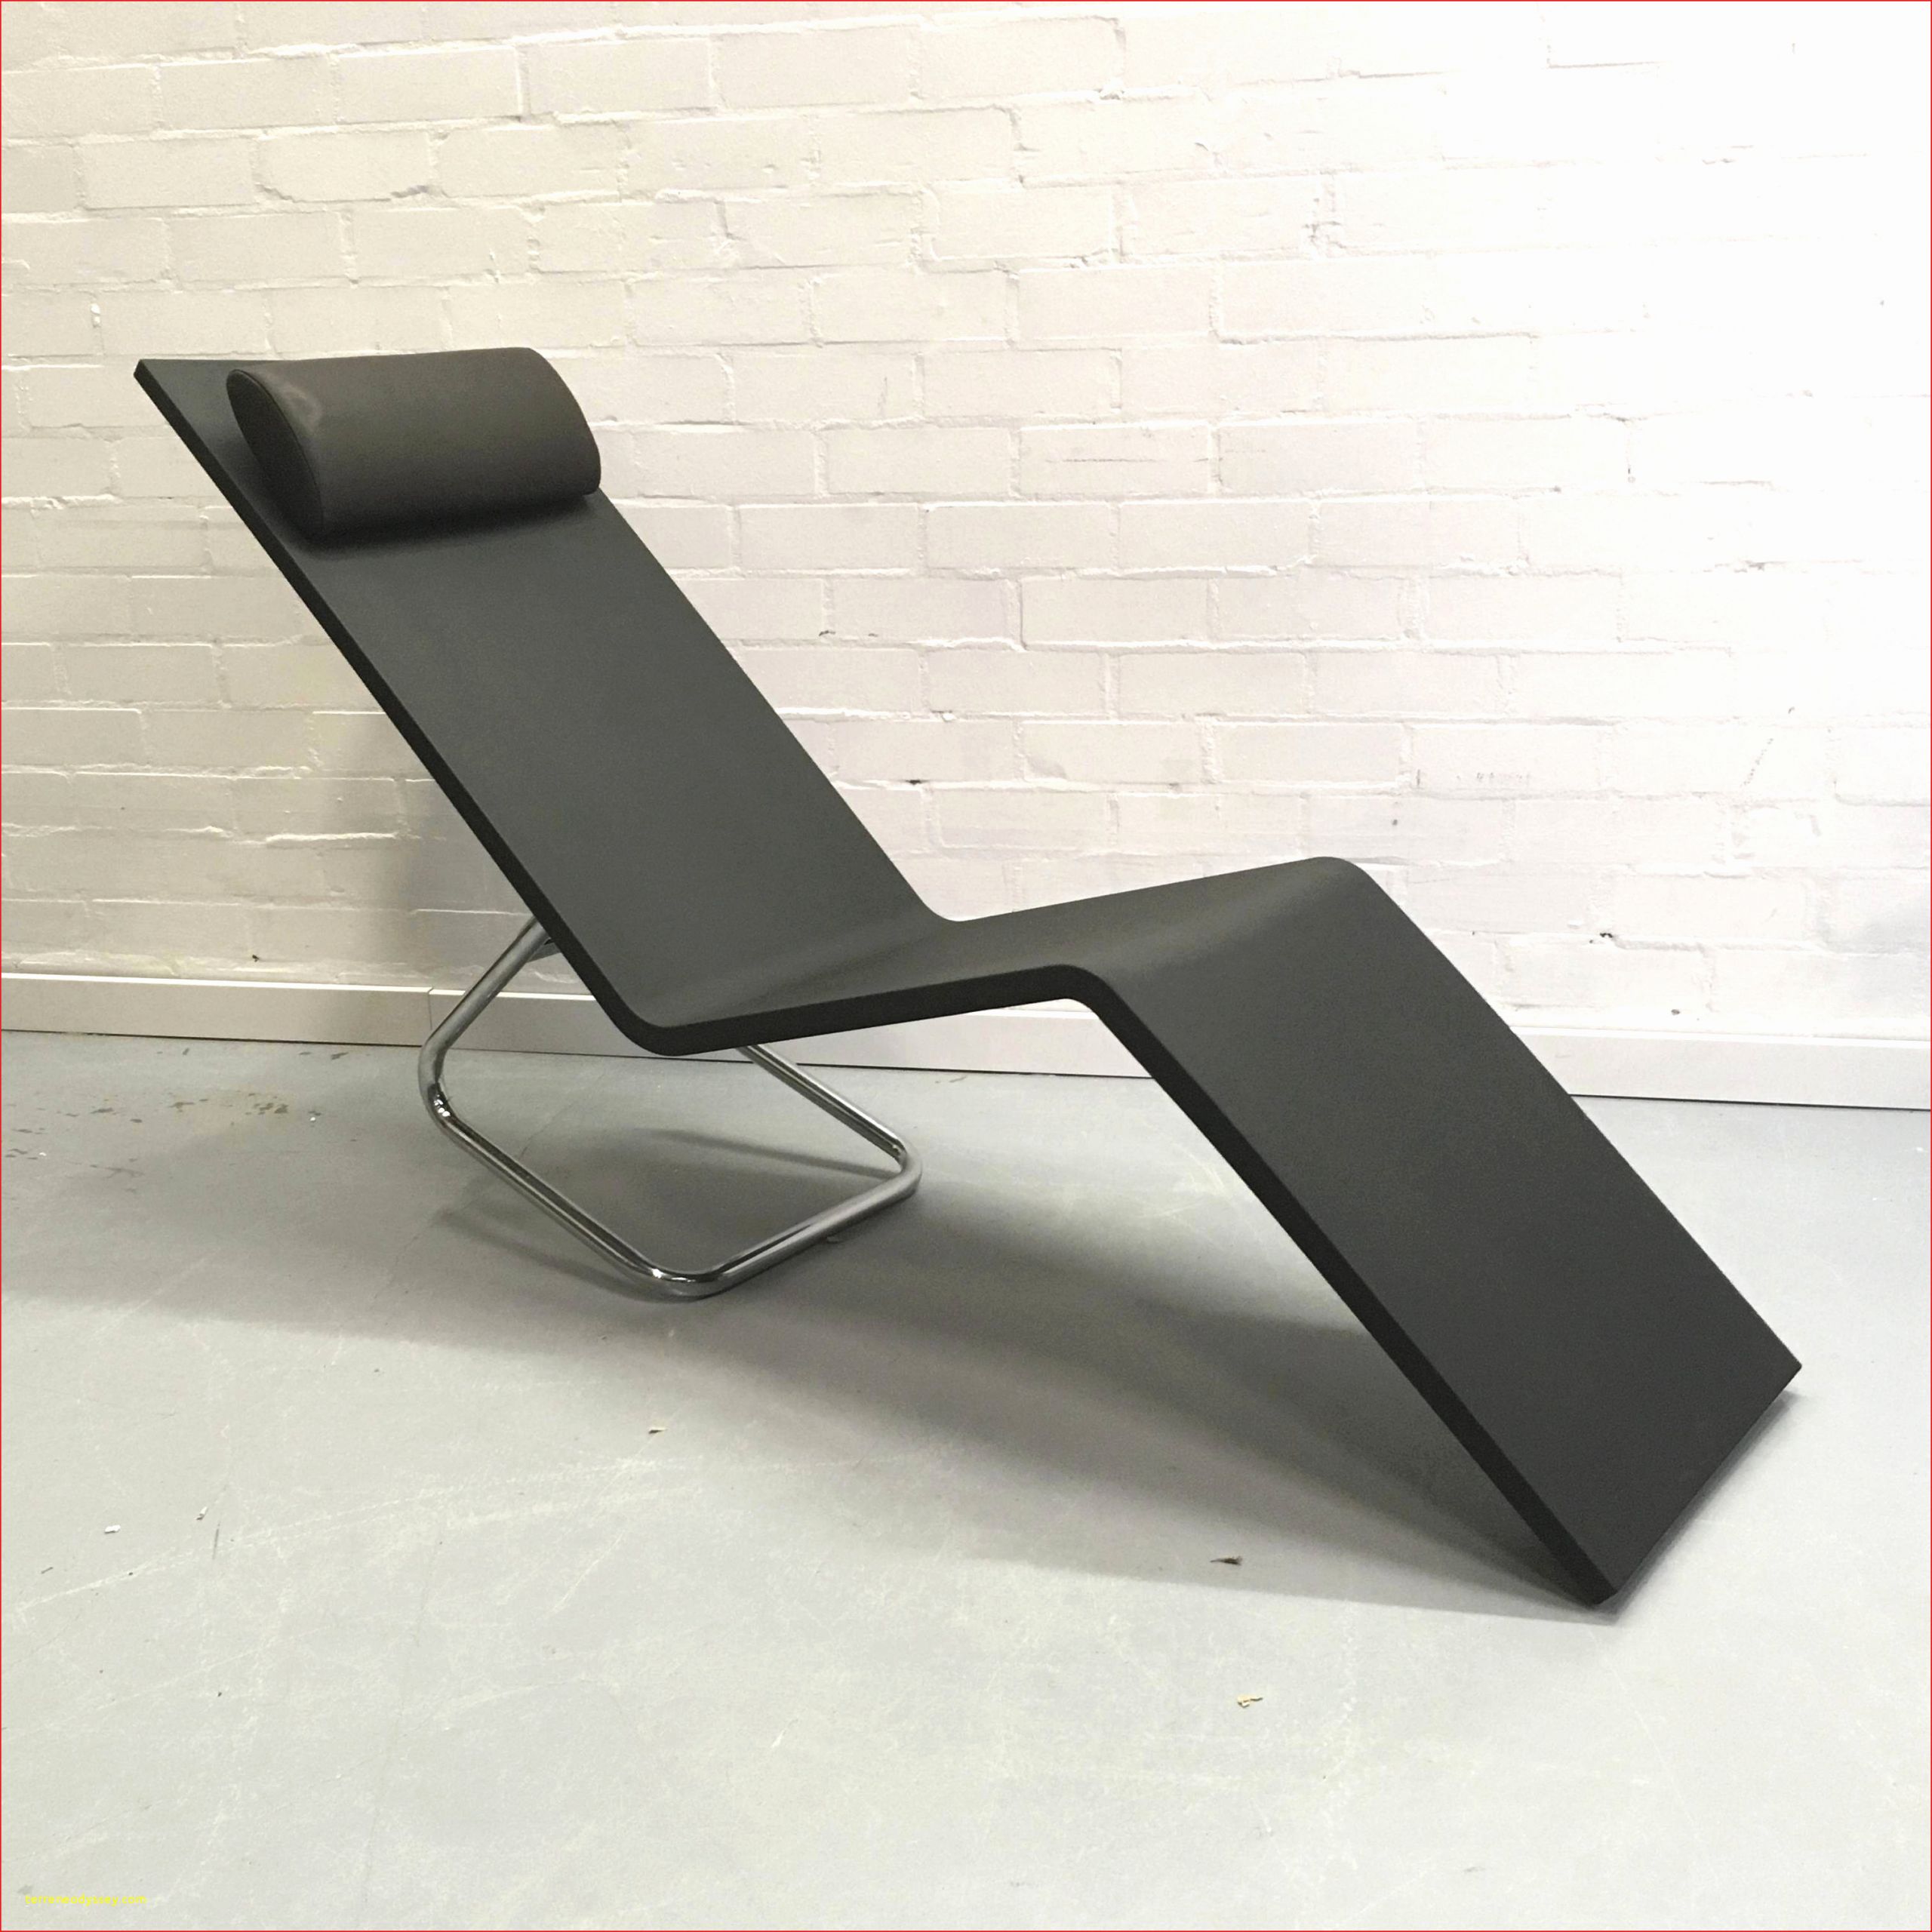 Table Et Chaise Terrasse Frais Incroyable Chaise Horeca Stock De Chaise Idée 2019